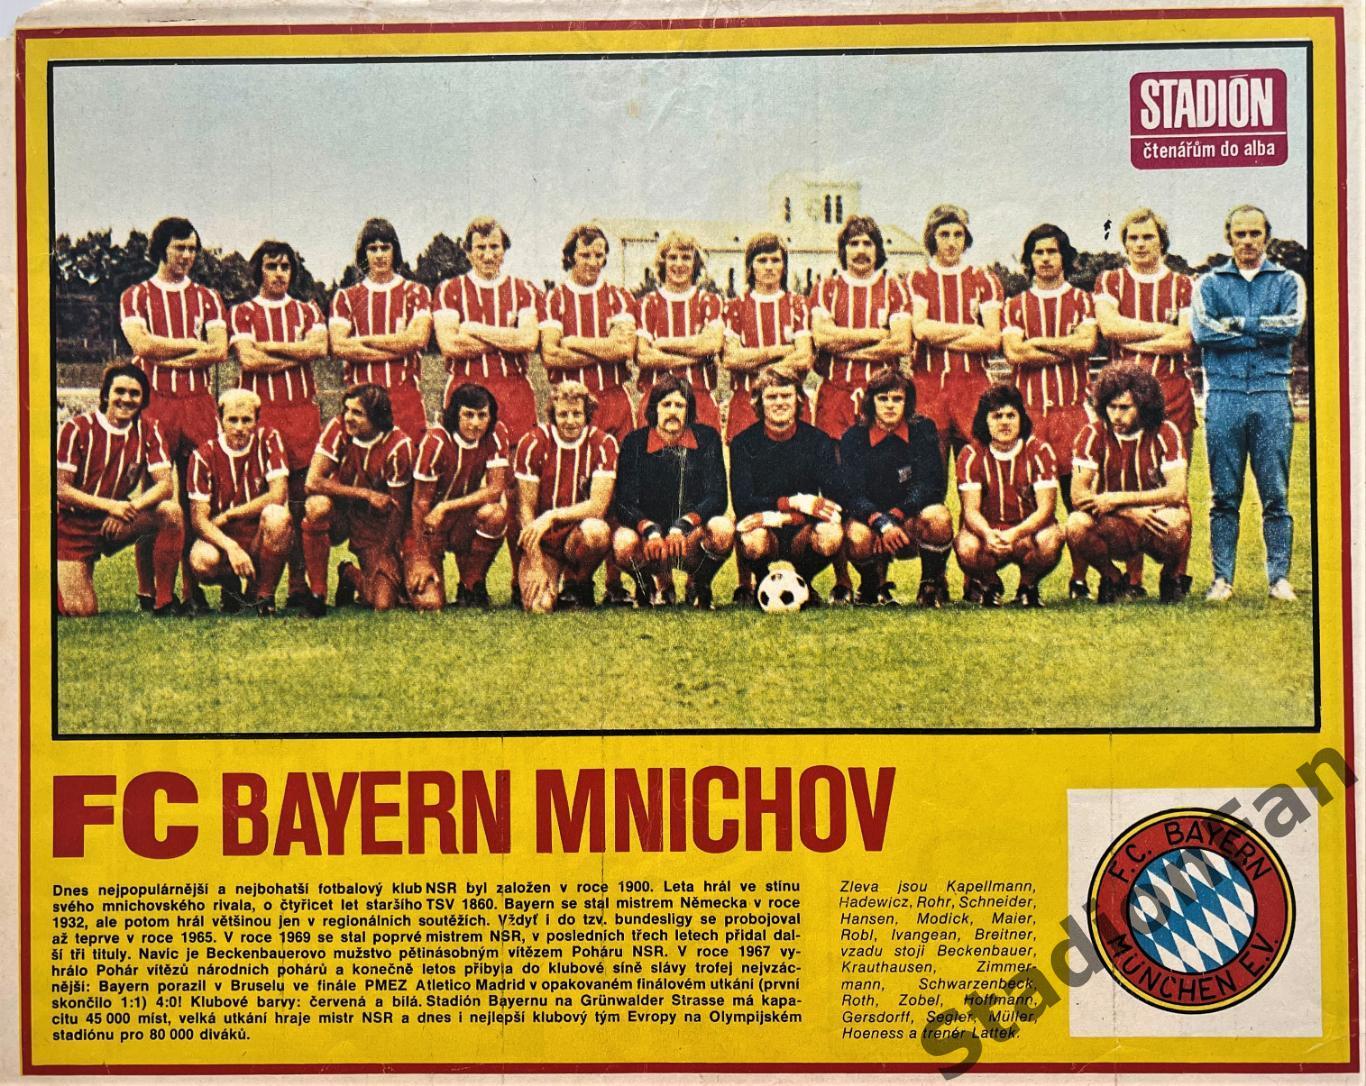 Постер из журнала Стадион (Stadion) - Bayern Mnichov, 1973.